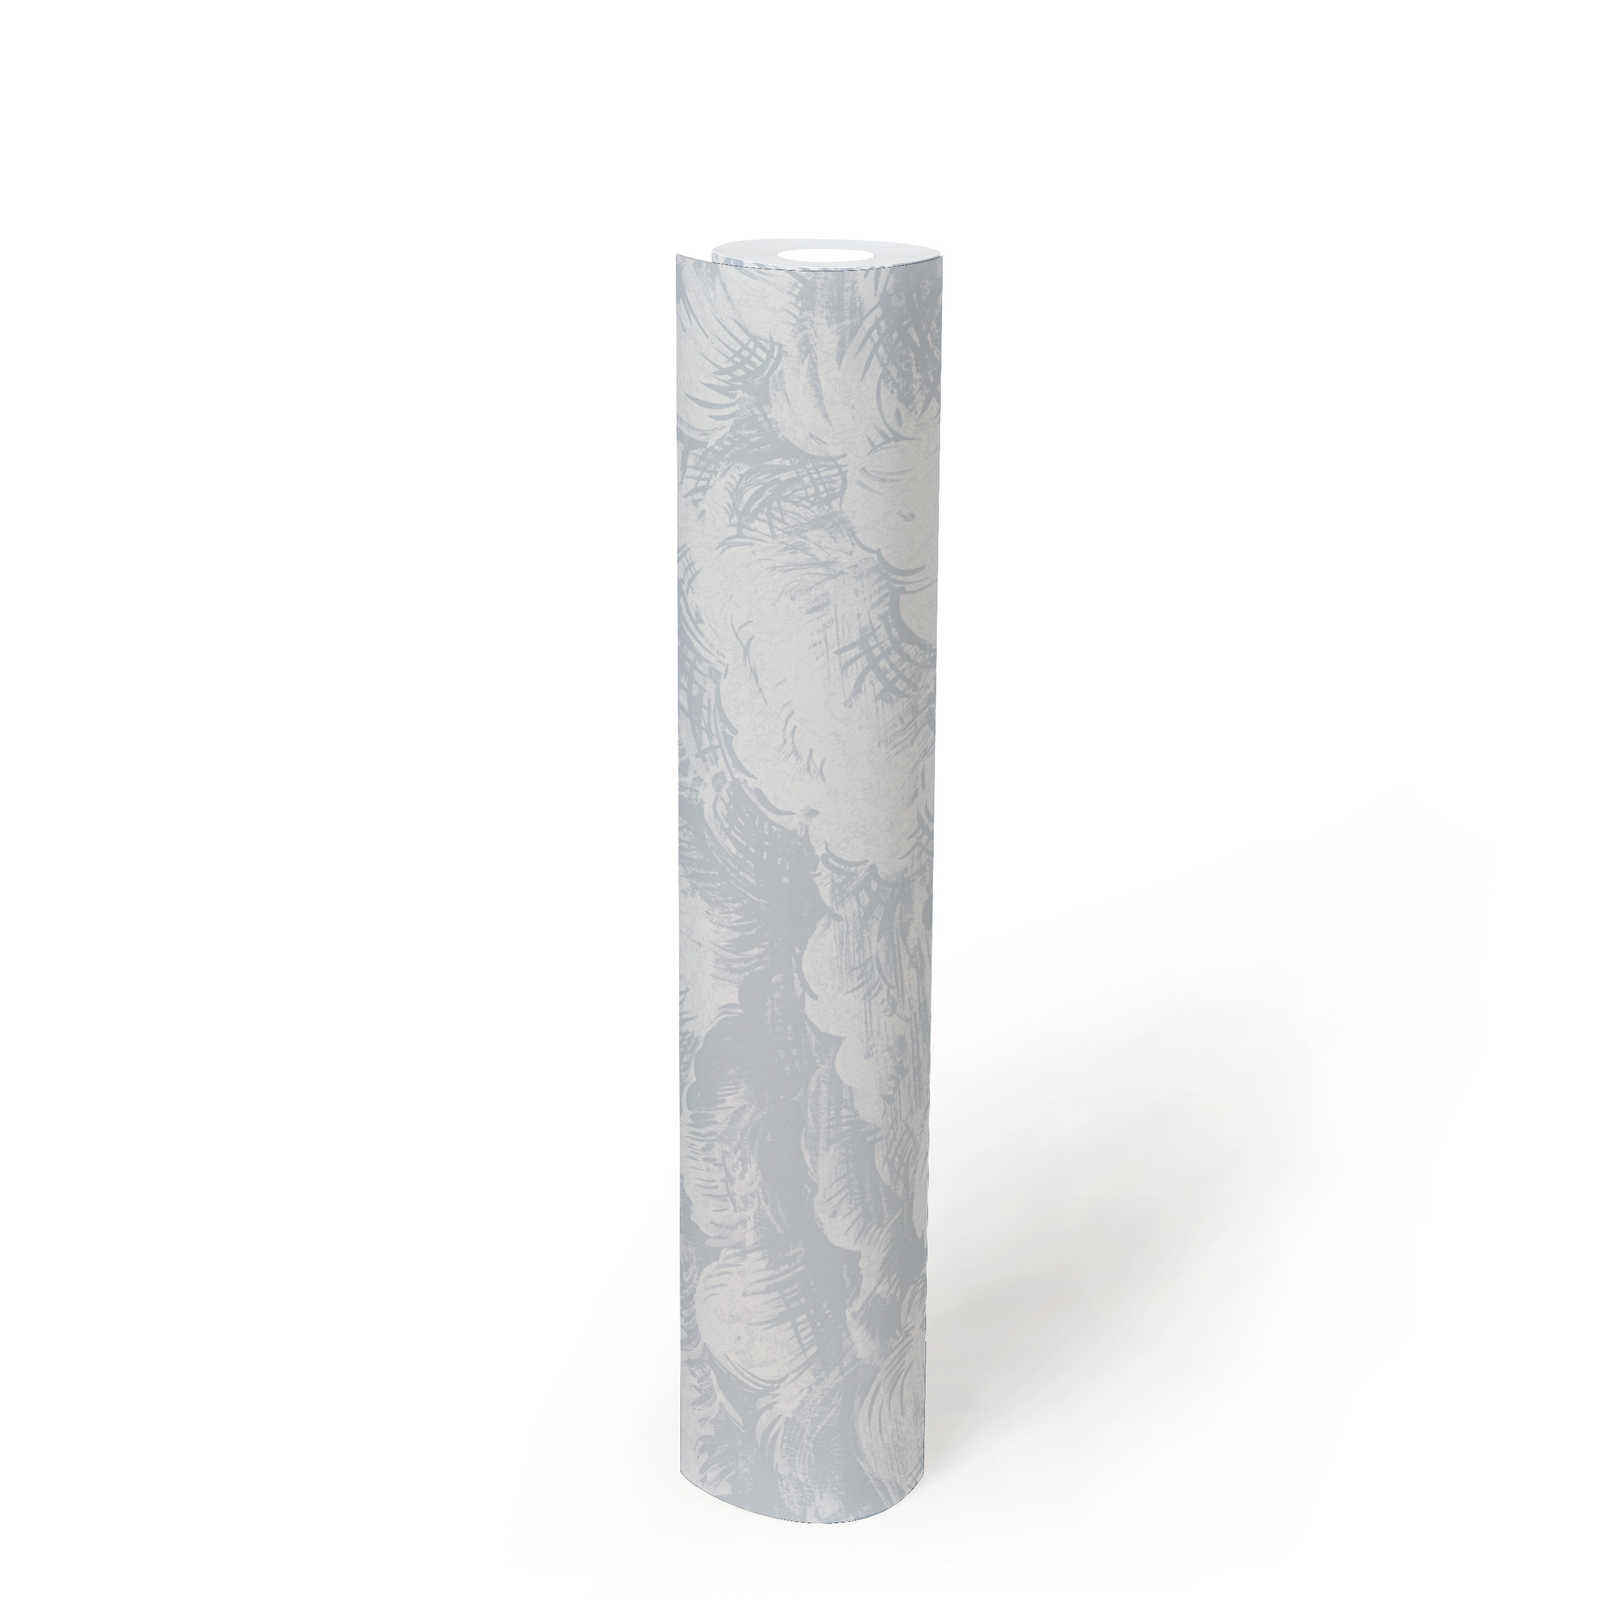             Vliesbehang lichtgrijs wolkenmotief in vintage stijl - grijs, wit
        